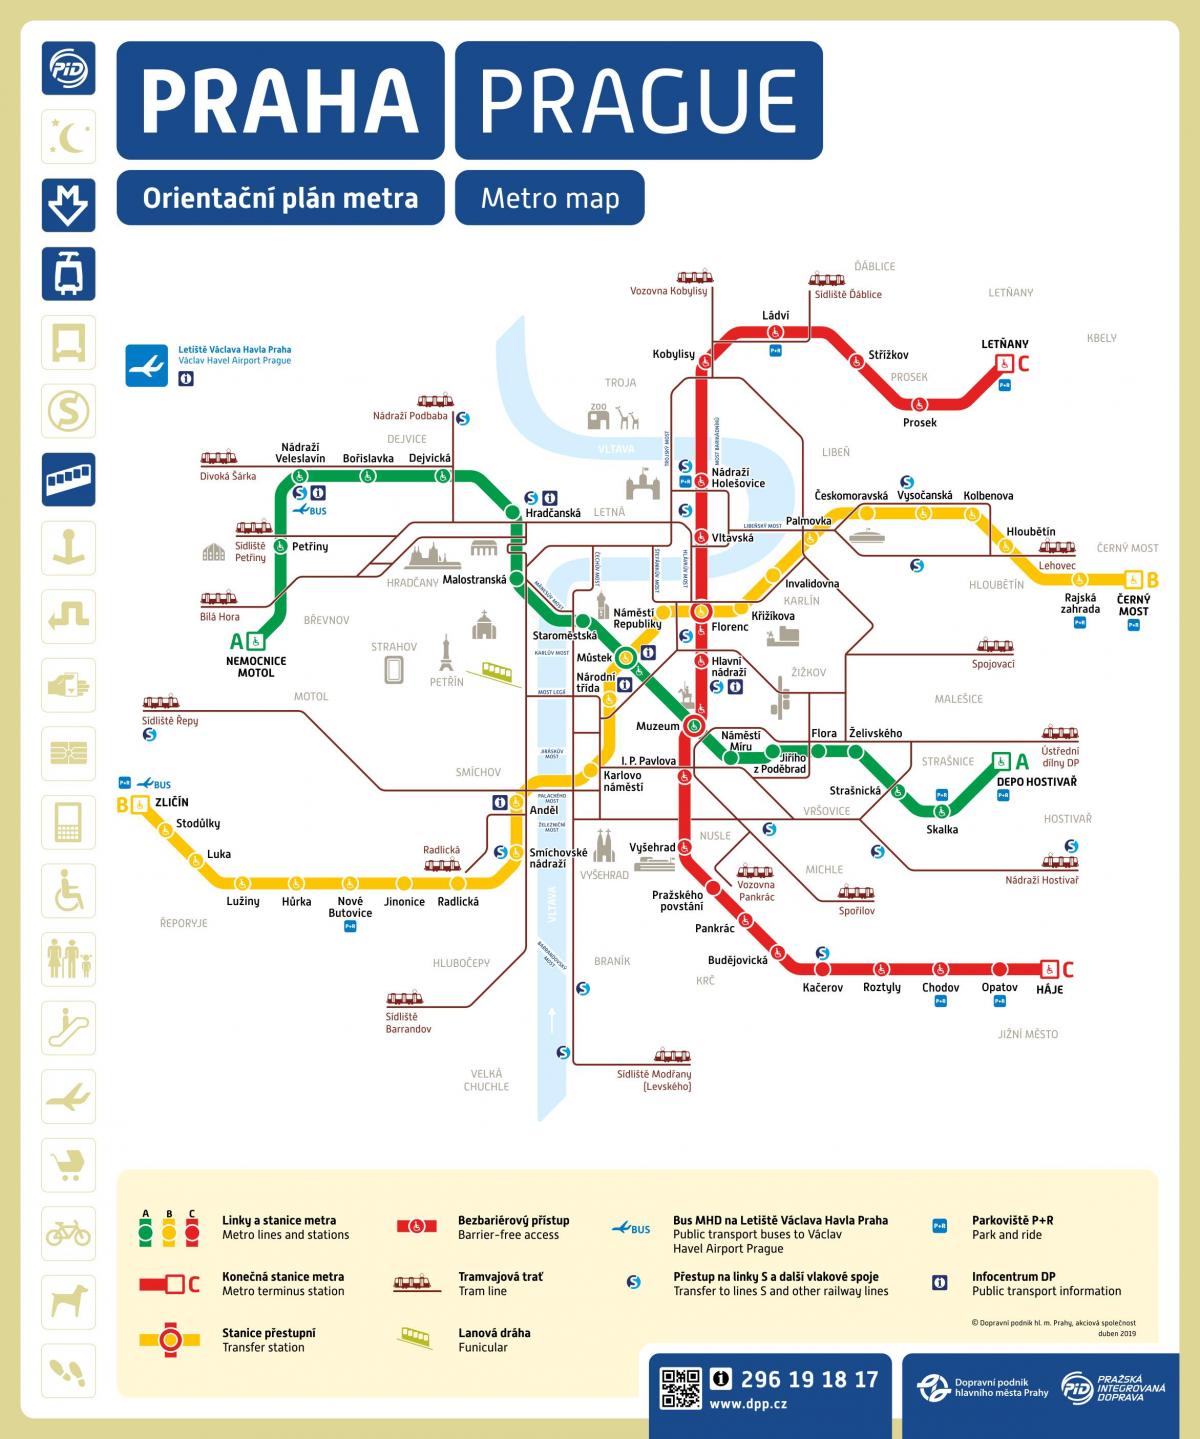 Mappa delle stazioni della metropolitana di Praga